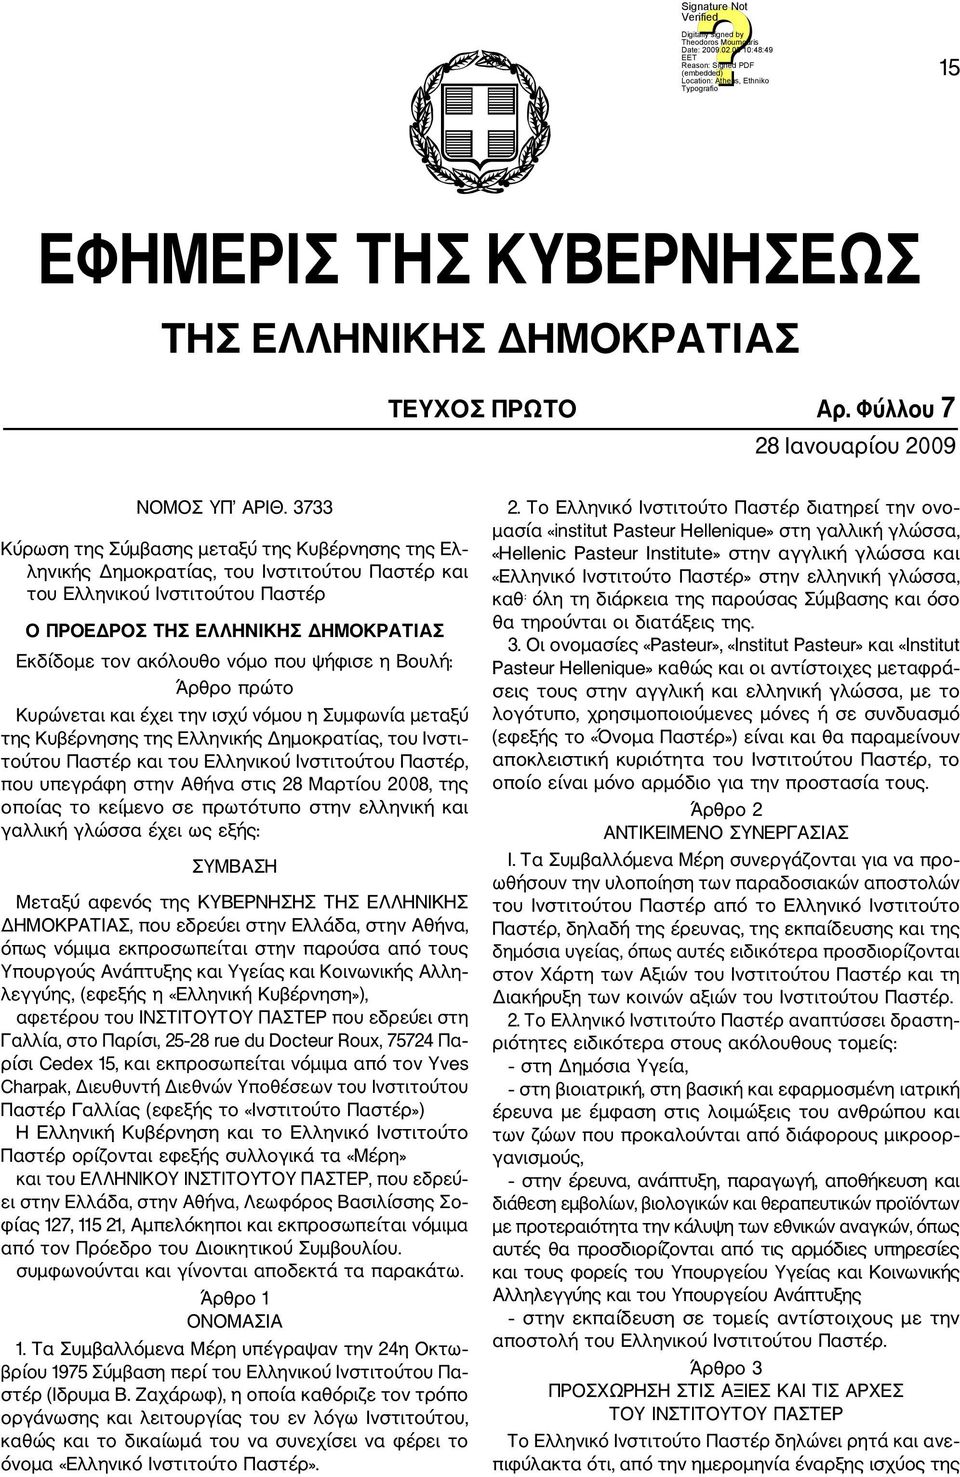 που ψήφισε η Βουλή: Άρθρο πρώτο Κυρώνεται και έχει την ισχύ νόμου η Συμφωνία μεταξύ της Κυβέρνησης της Ελληνικής Δημοκρατίας, του Ινστι τούτου Παστέρ και του Ελληνικού Ινστιτούτου Παστέρ, που υπεγρά